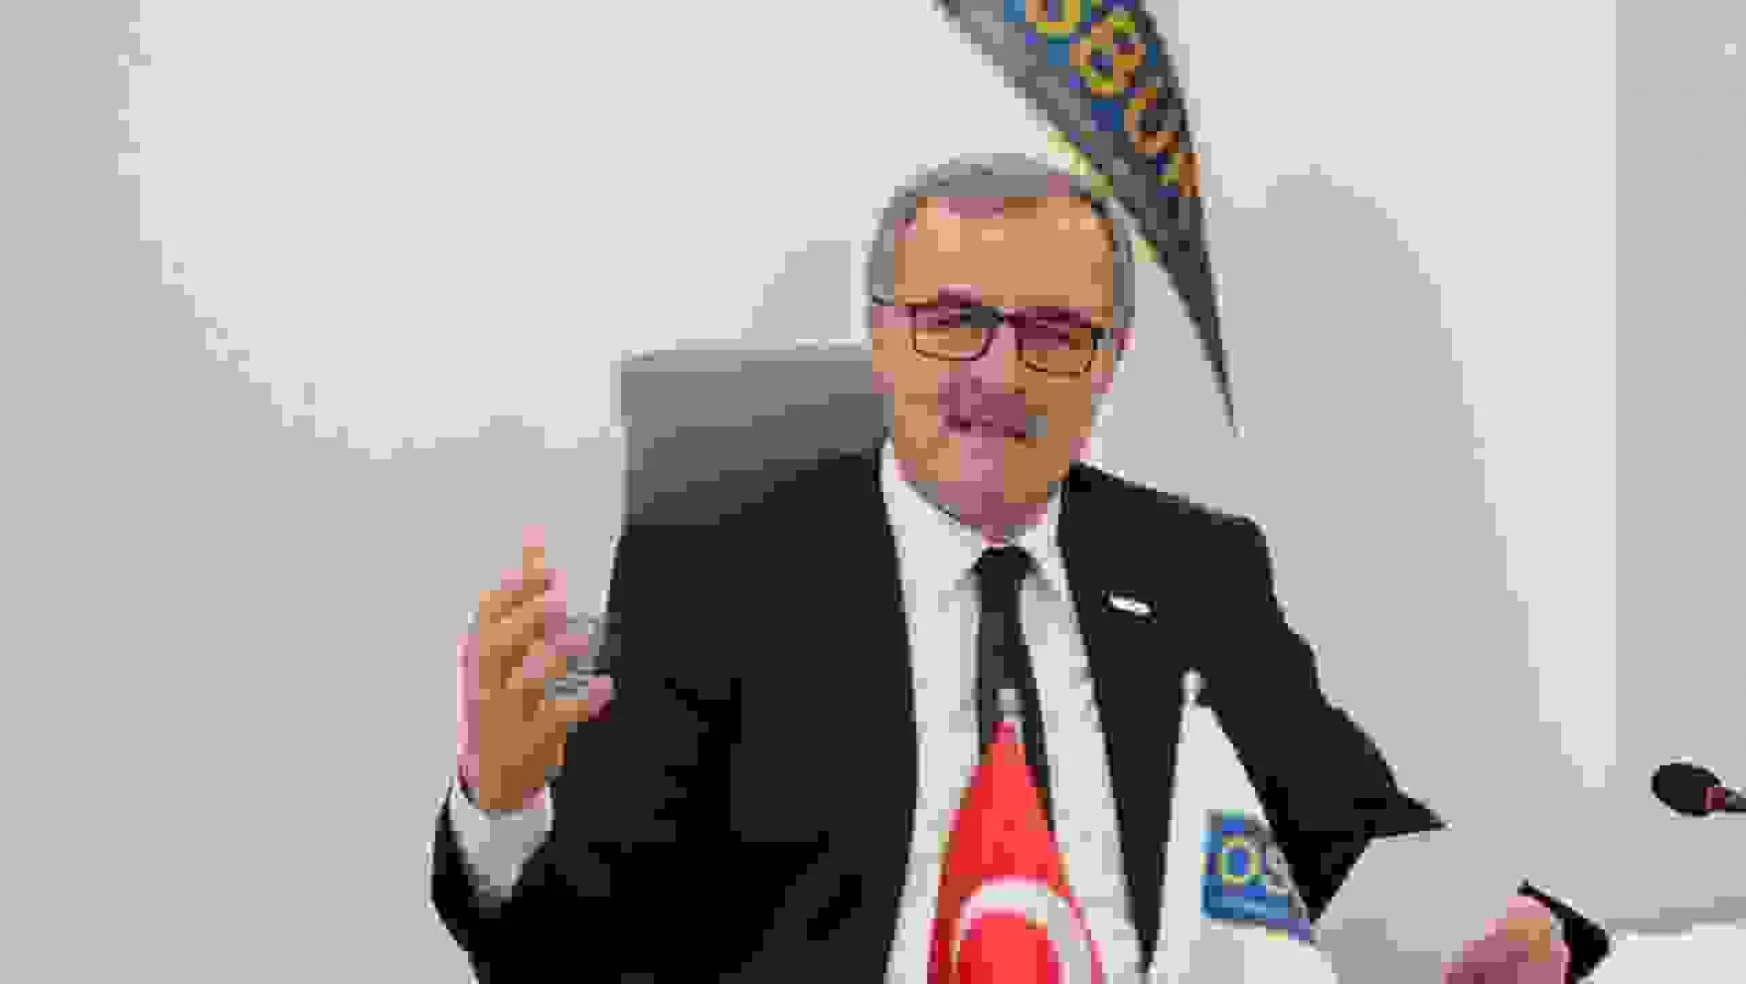 OSBÜK Başkanı Kütükcü: 'Büyük Türkiye için yeni reformlar hayata geçirme vakti'